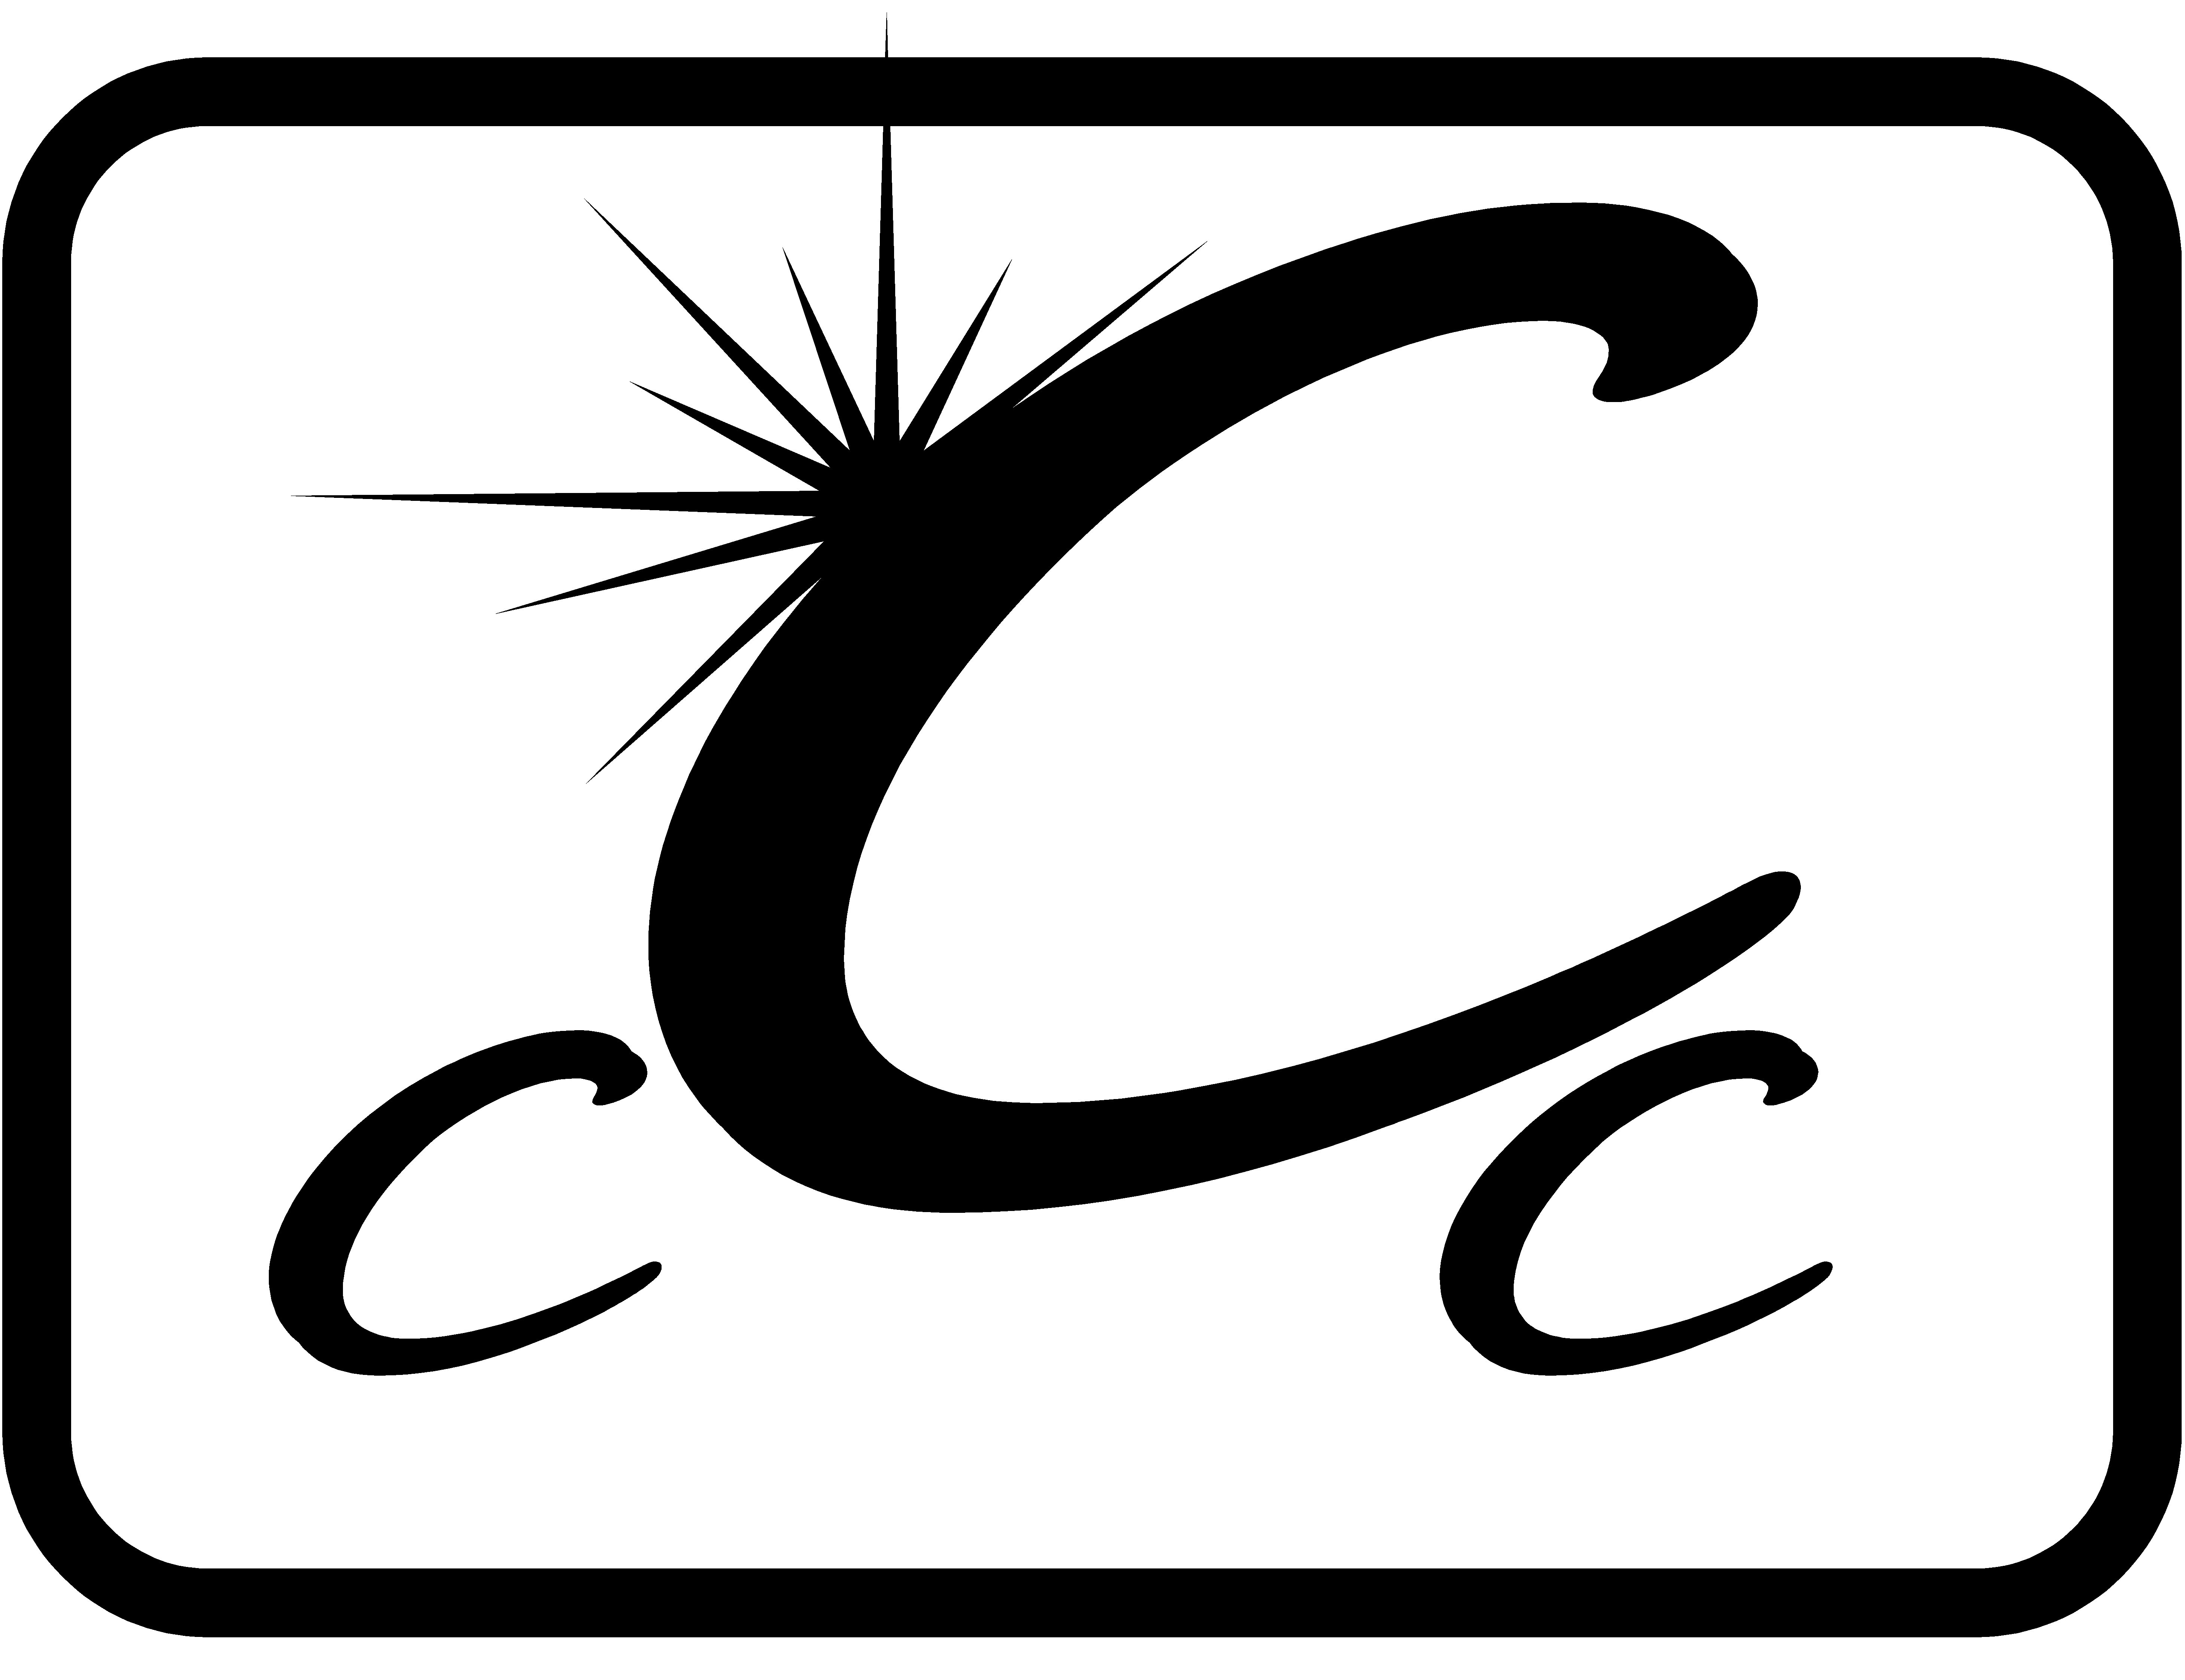 C C C